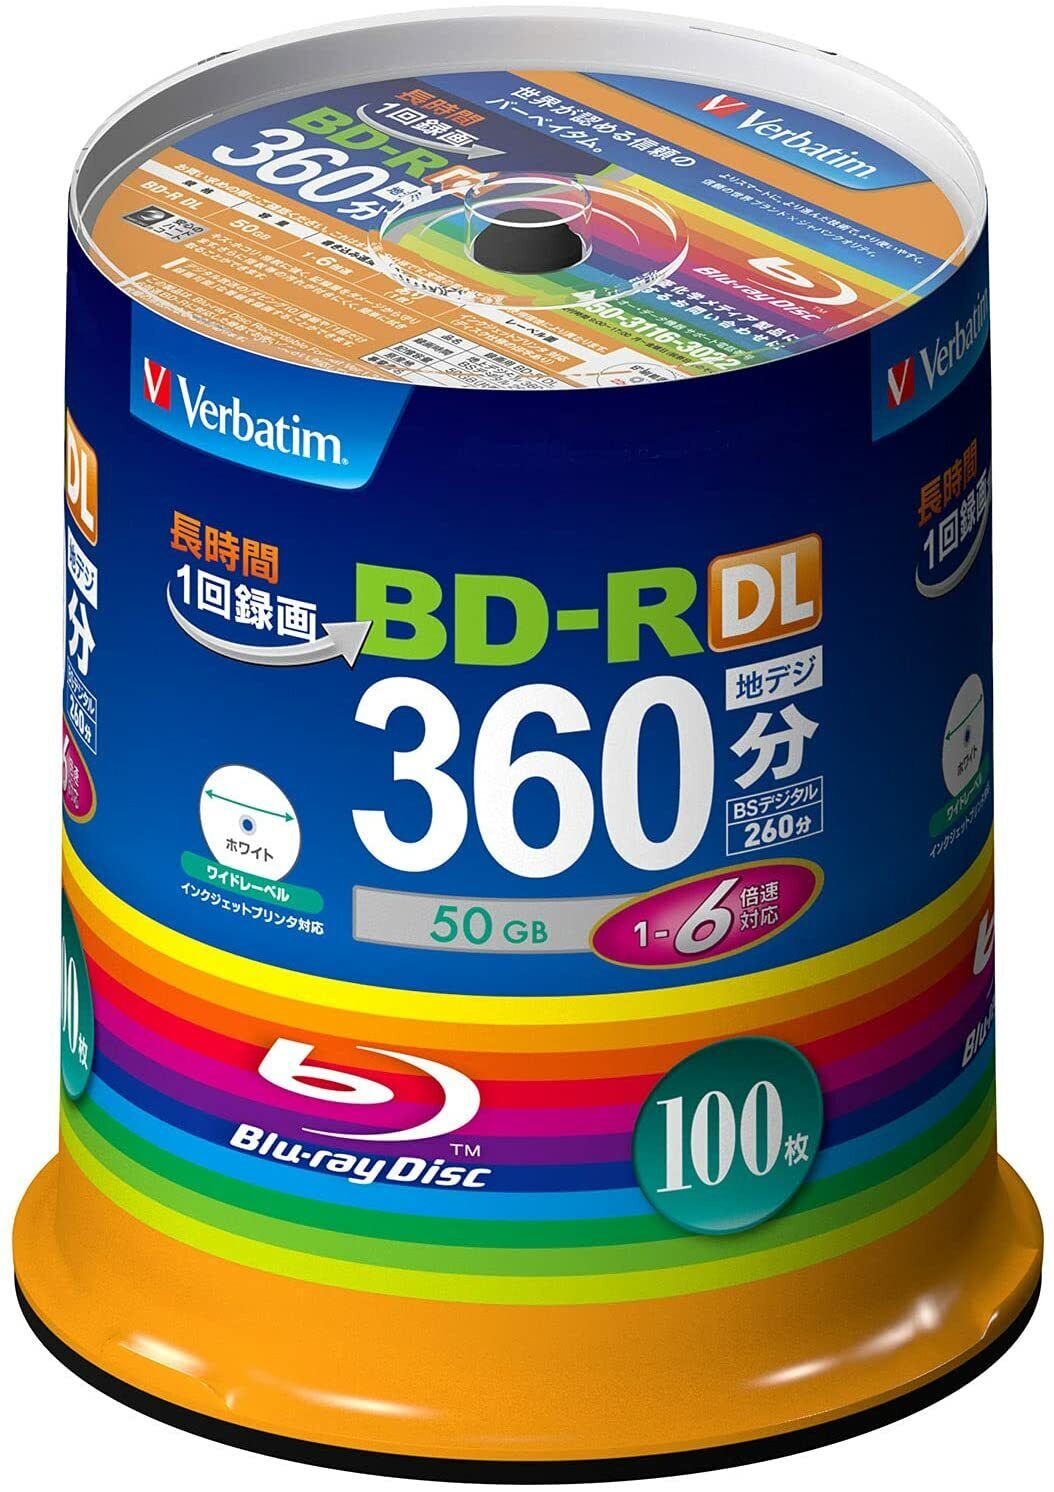 Verbatim VBR260RP100SV1 Blank Blu-ray BD-R DL 50GB 1-6x 100 discs New F/S